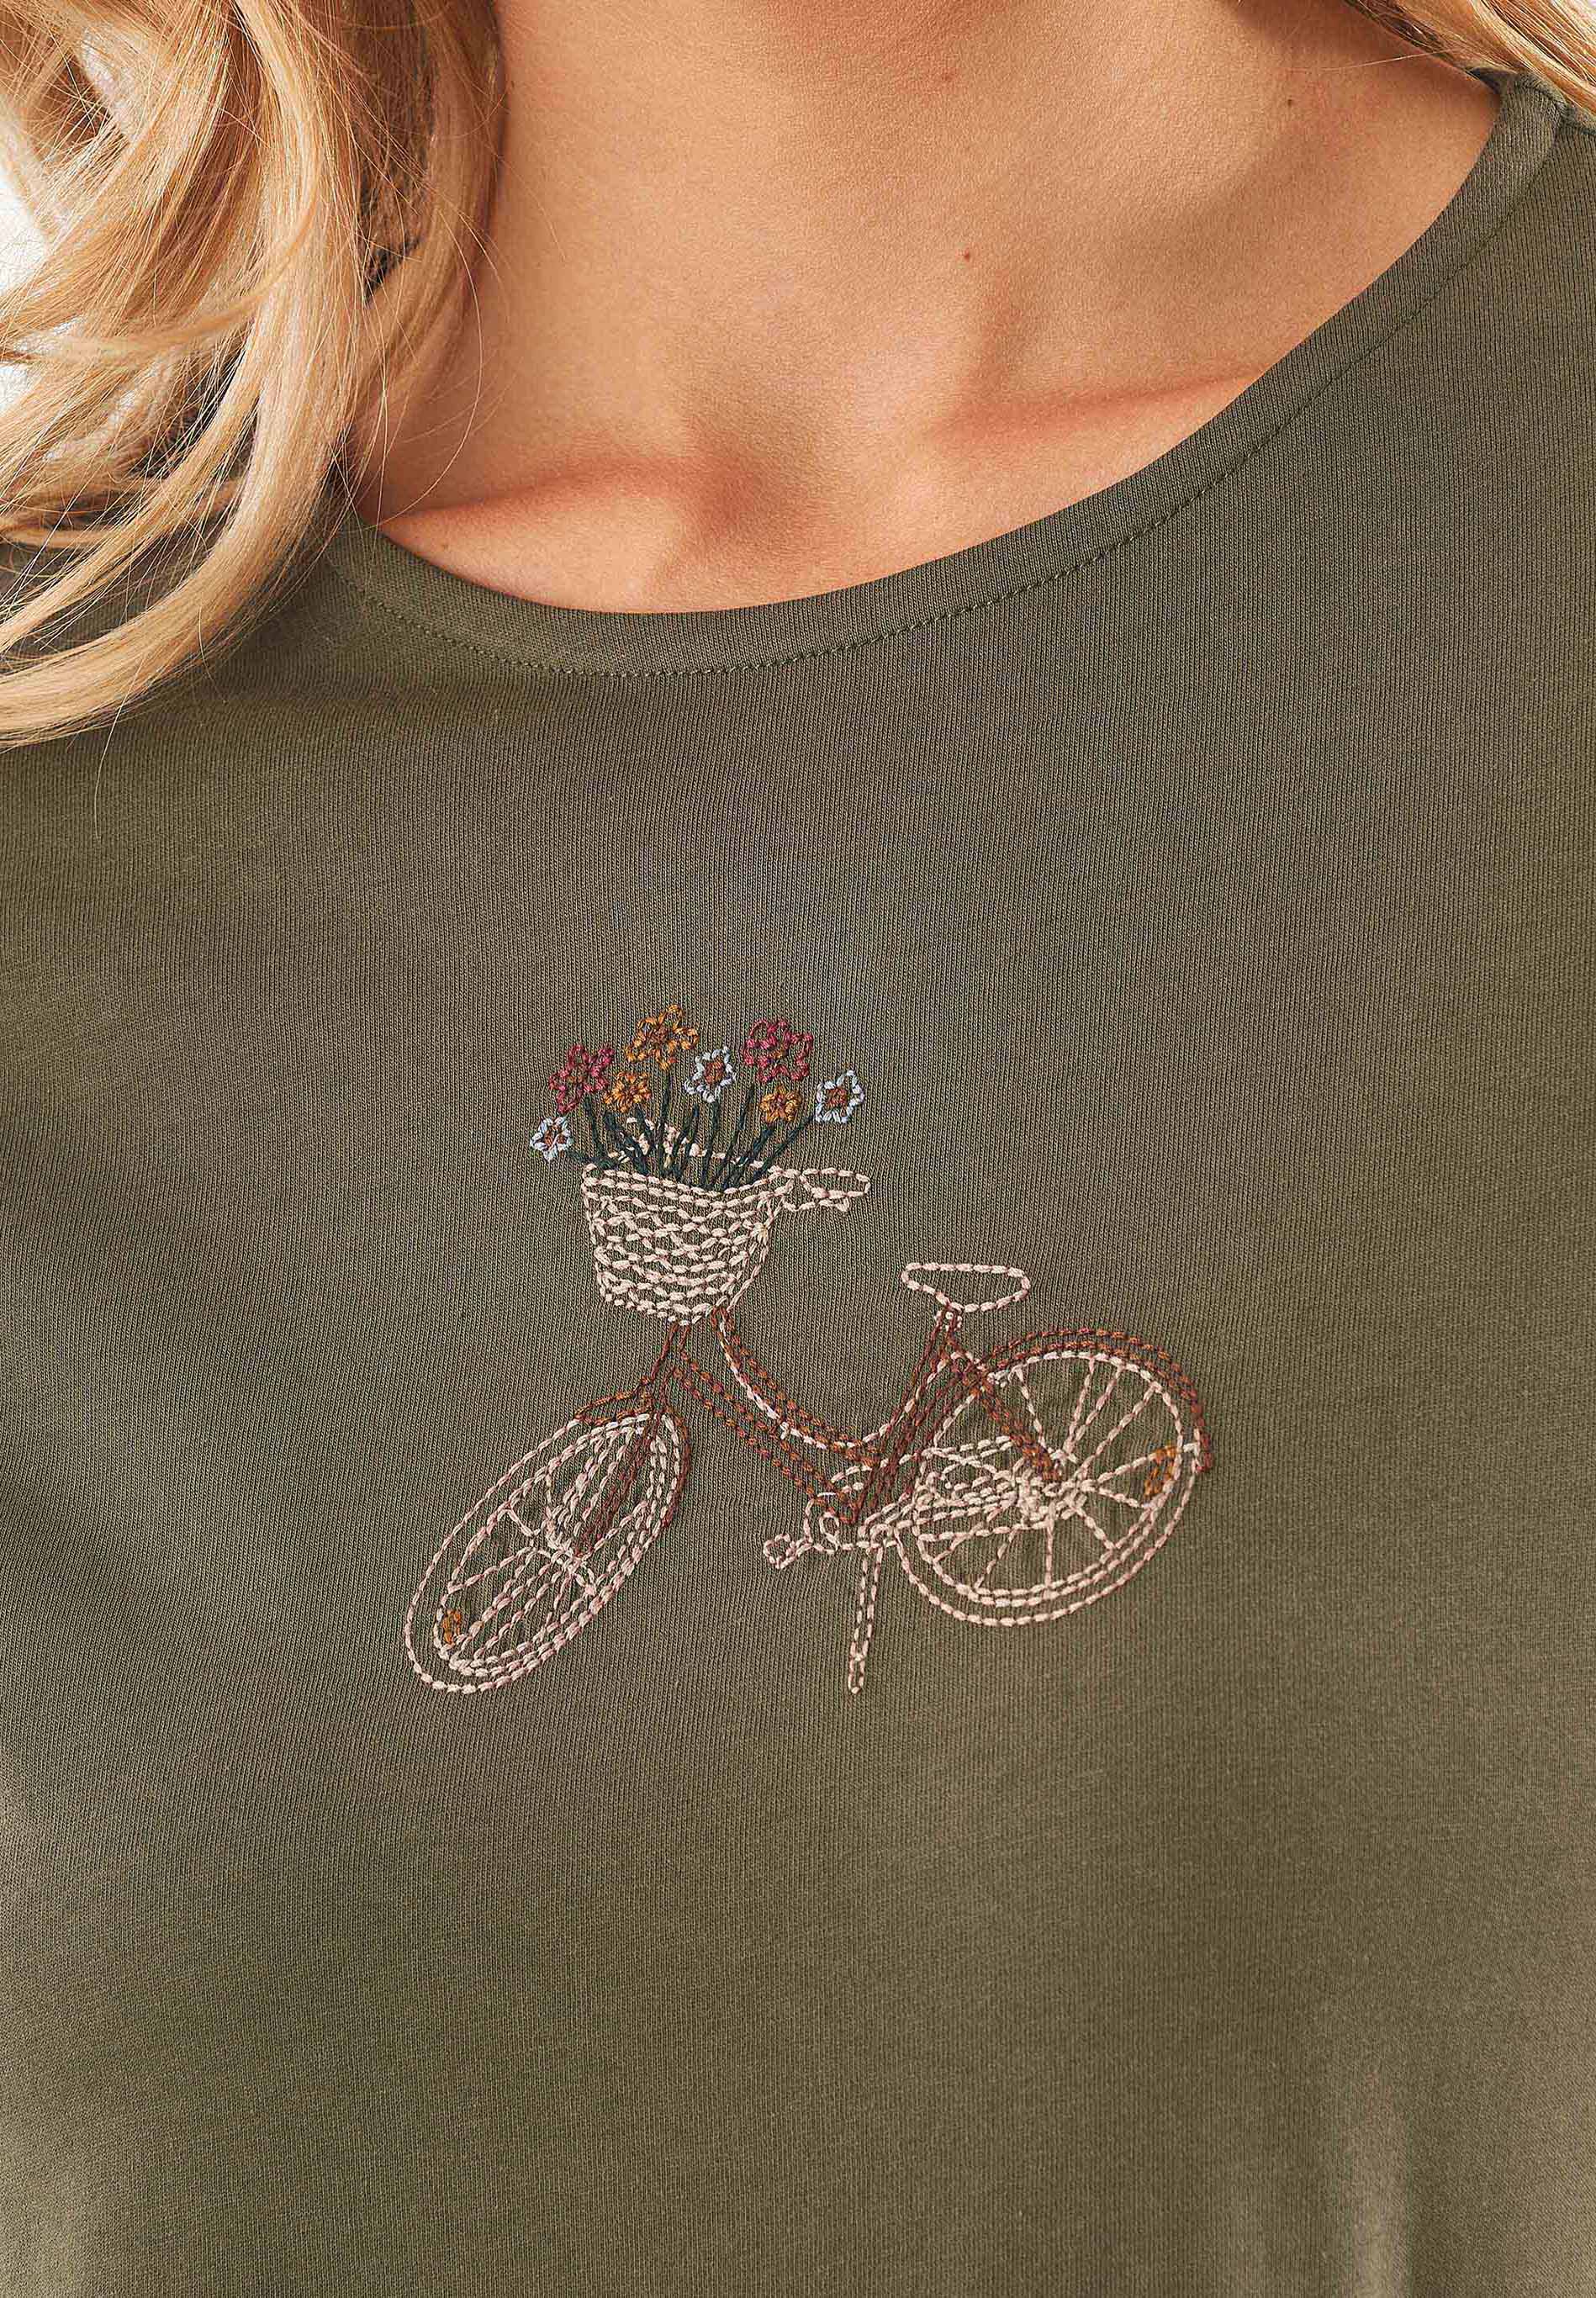 T-Shirt aus Bio-Baumwolle mit Fahrrad-Stickerei